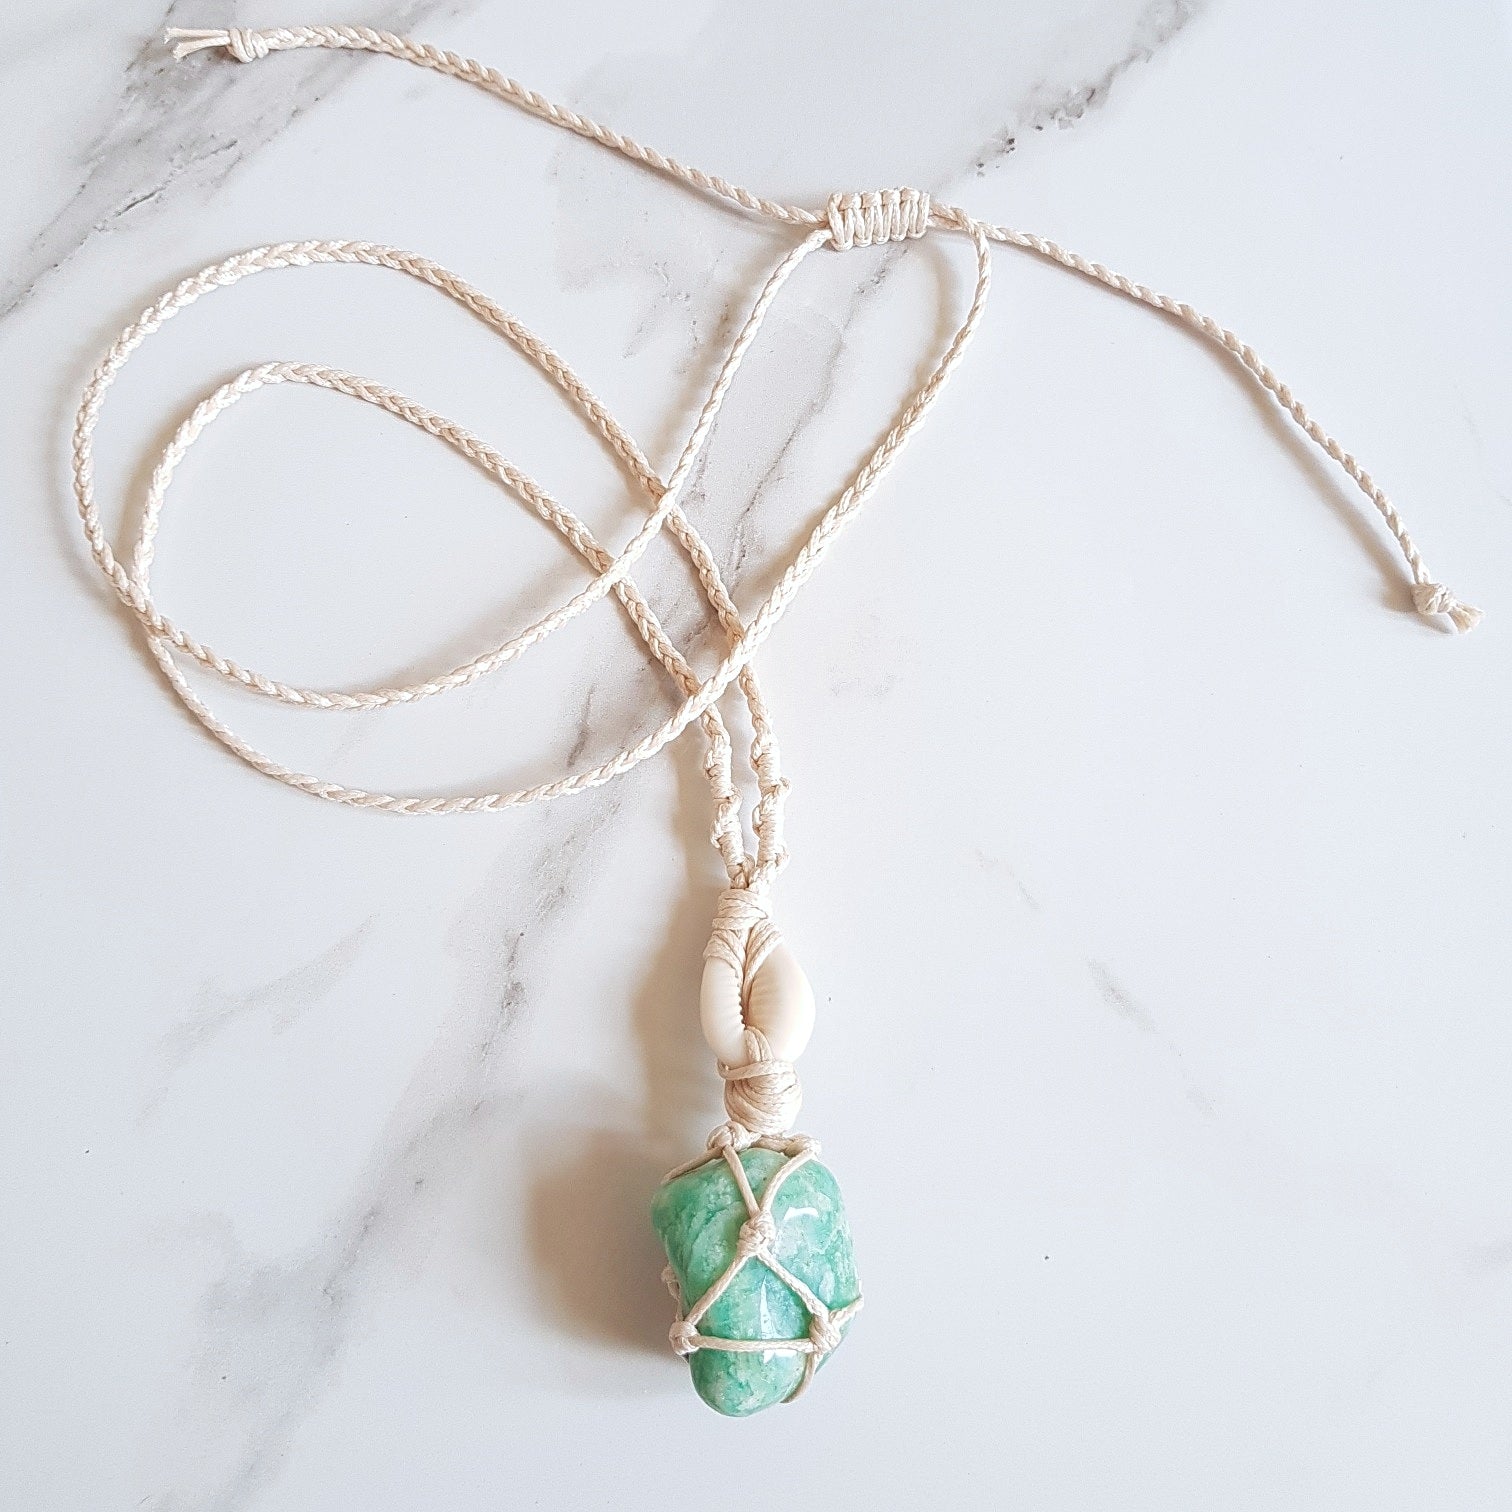 Goddess Necklace - Amazonite